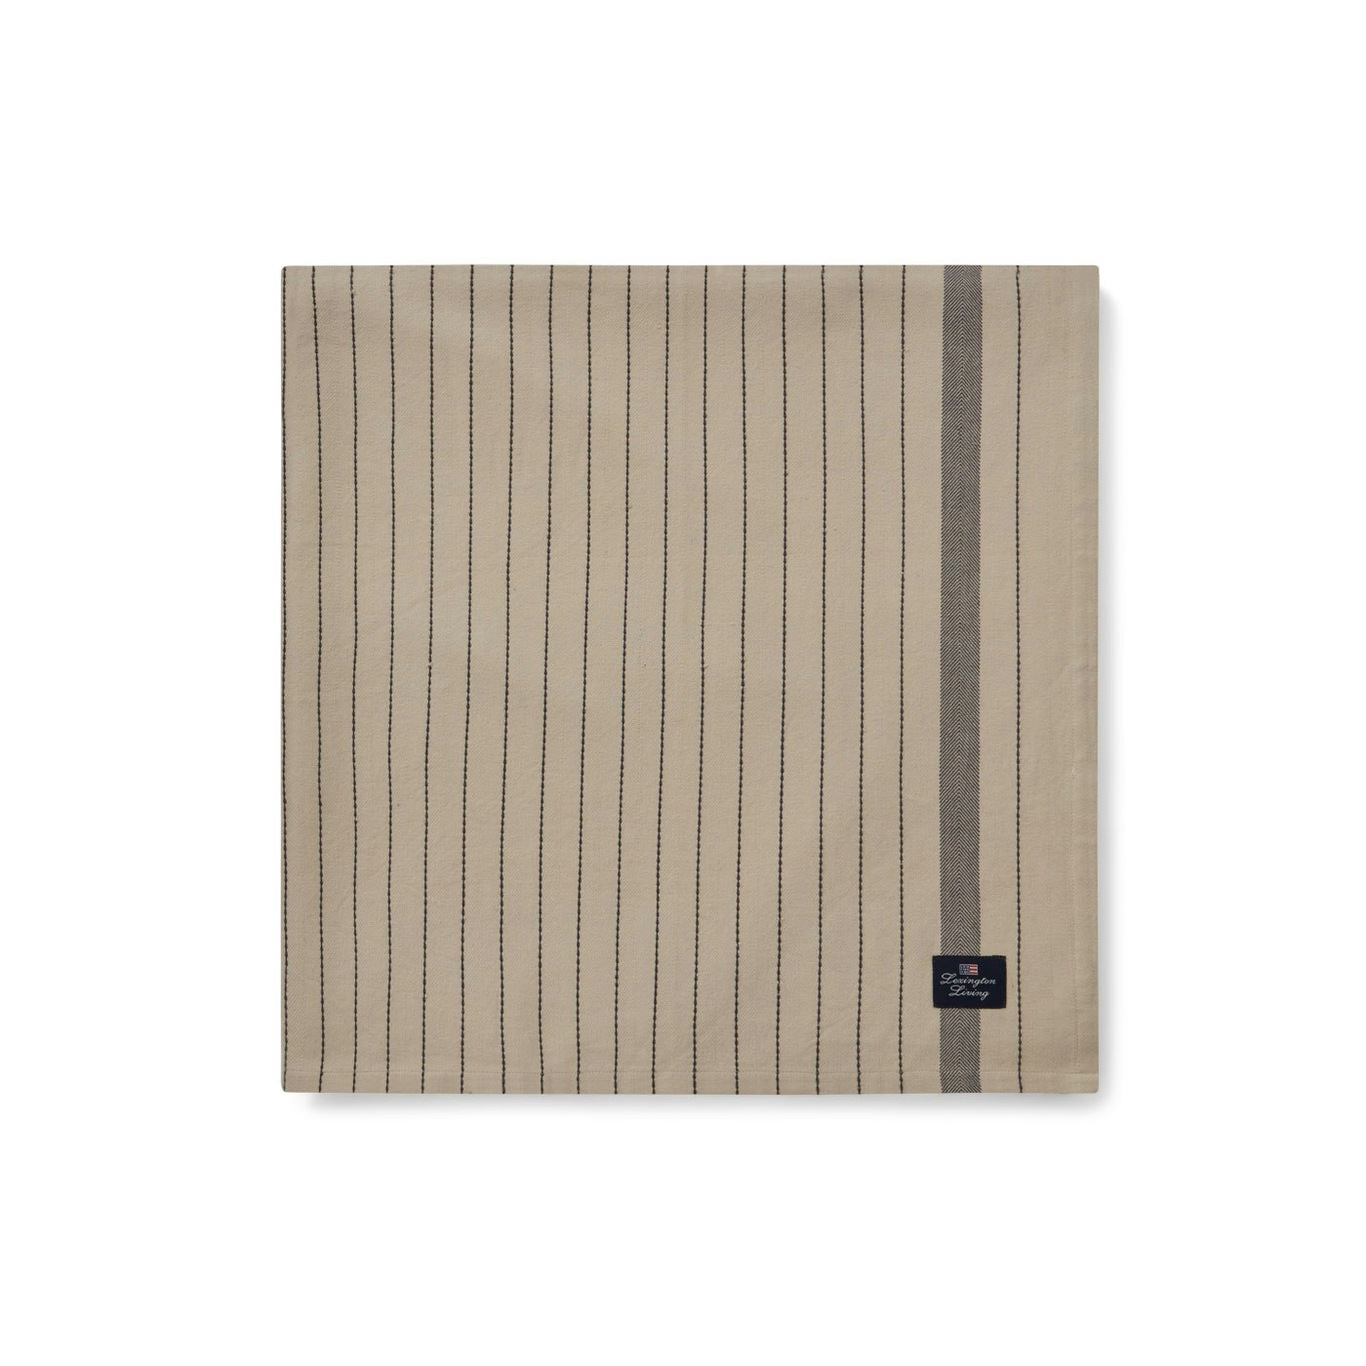 Striped Organic Cotton Duk Beige/Mørkegrå, 150x250 cm